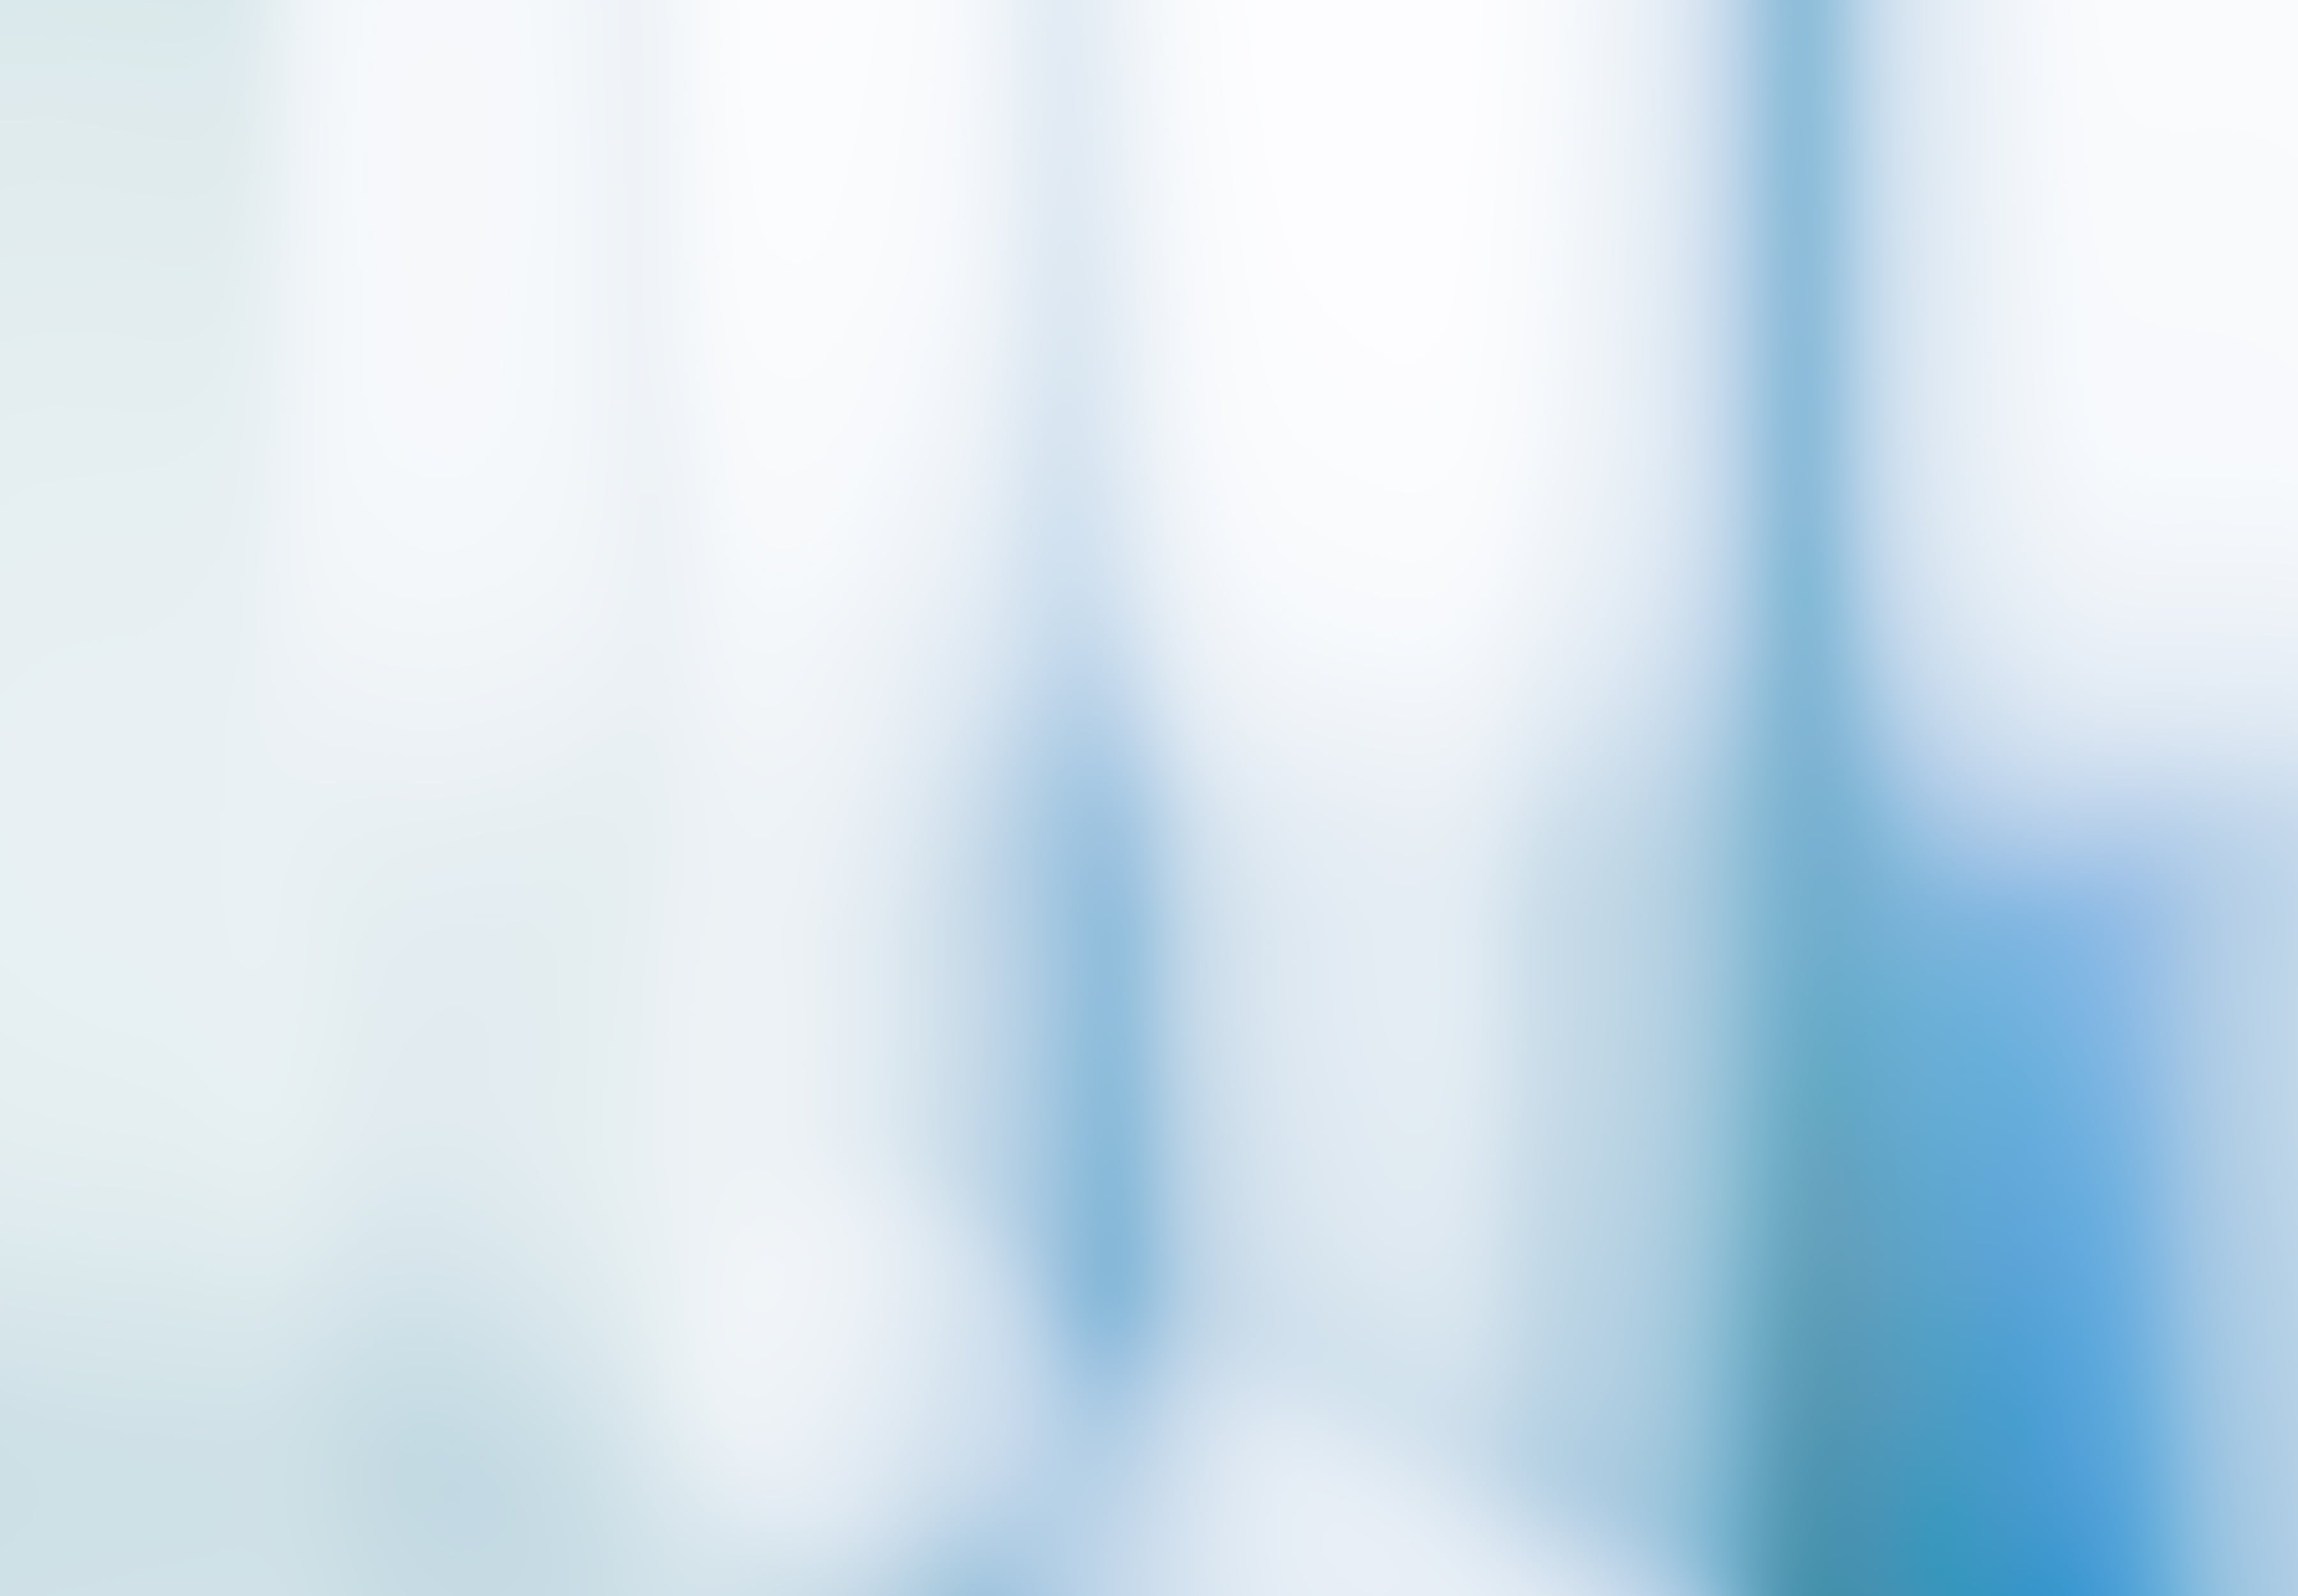 apoBank Investor Relations Headerbild mit blauem Hintergrund